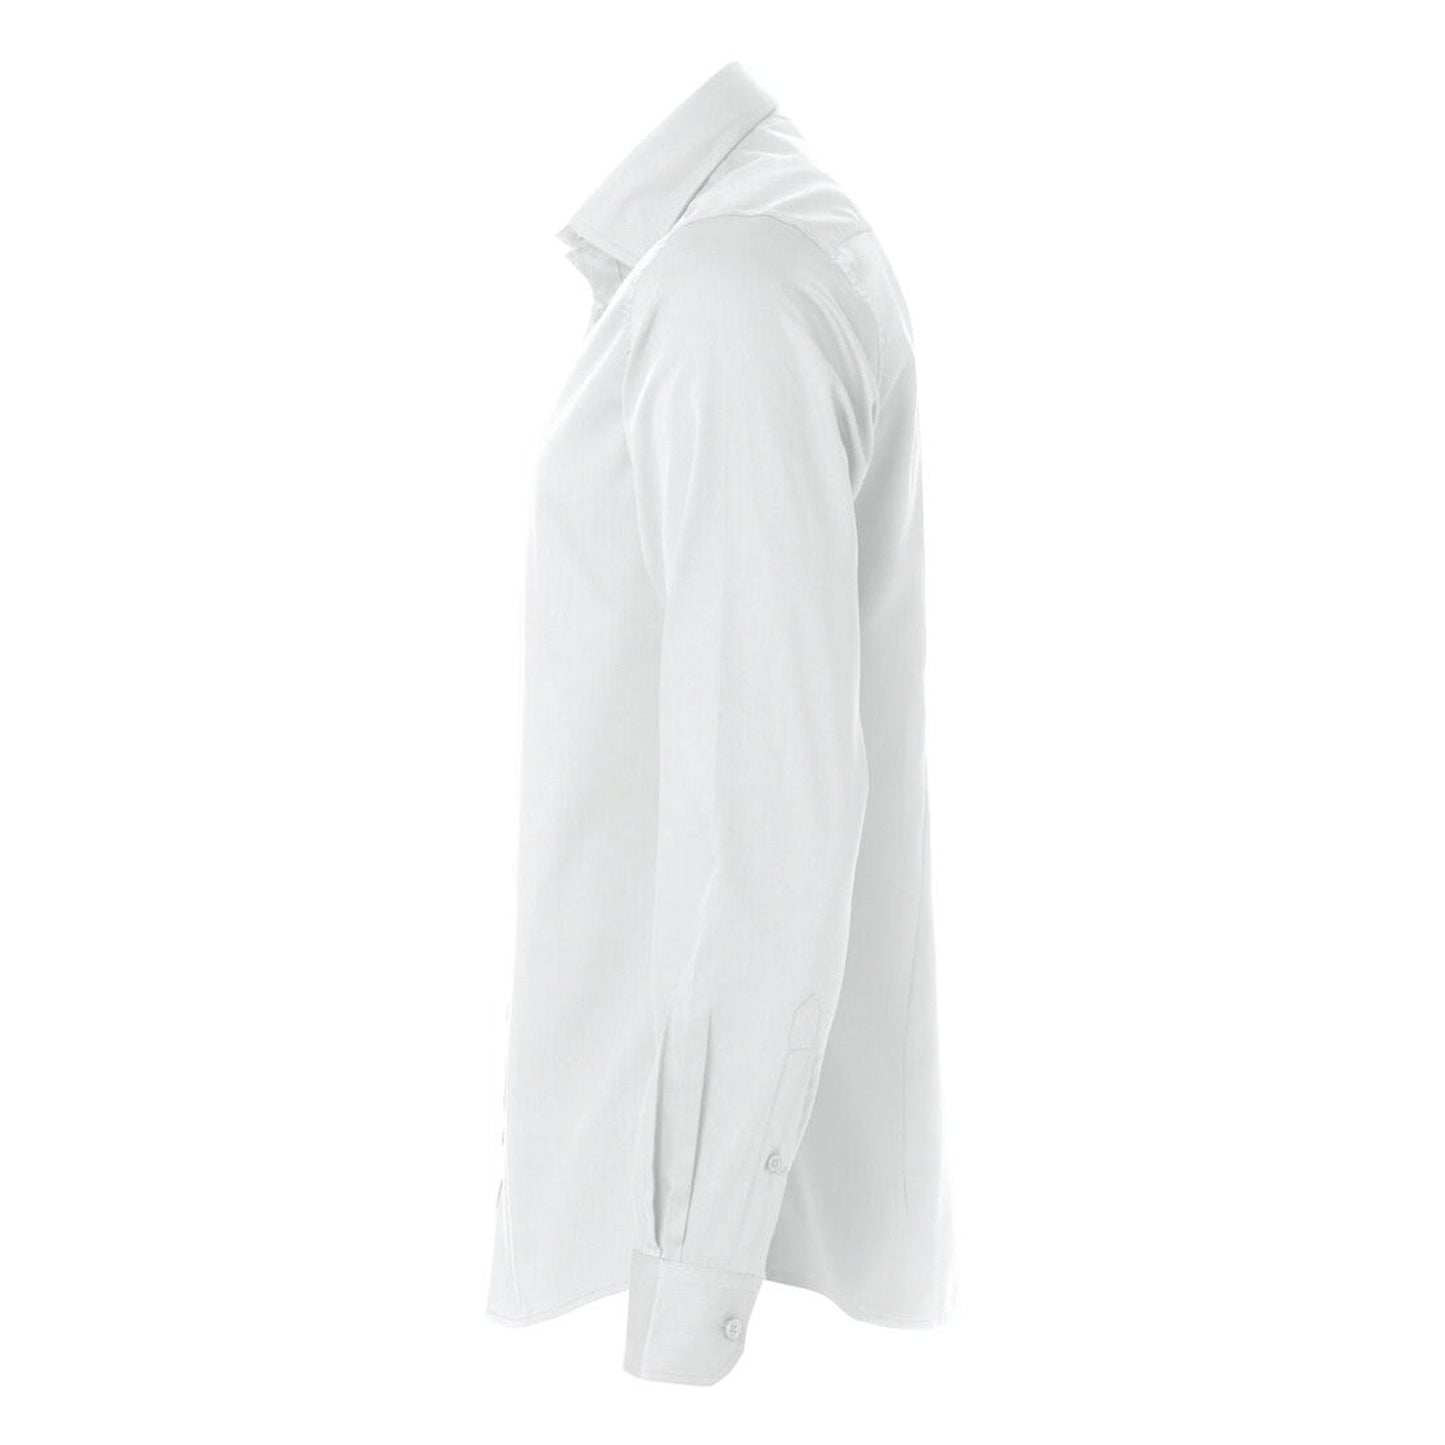 Clique Beveiliging Overhemd / Blouse Heren met Borstlogo (V-tje) - van Clique - Nu voor maar €46.95 bij Workwear 2 Day